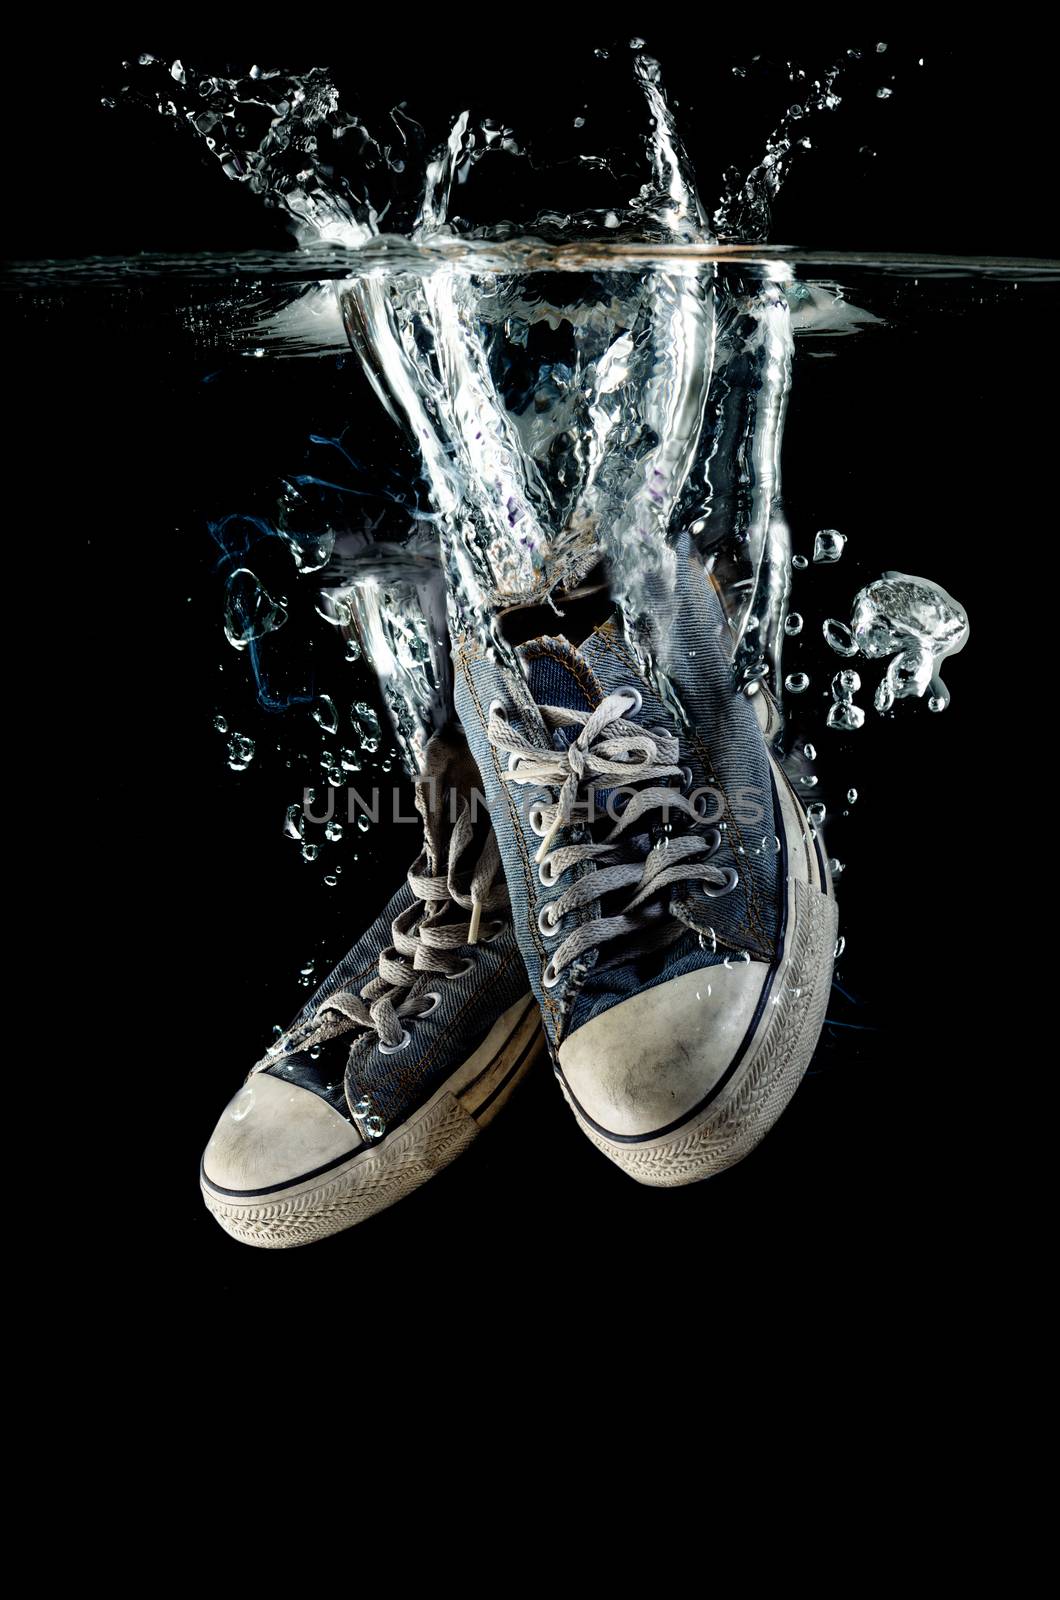 Splashing Sneakers by 9george